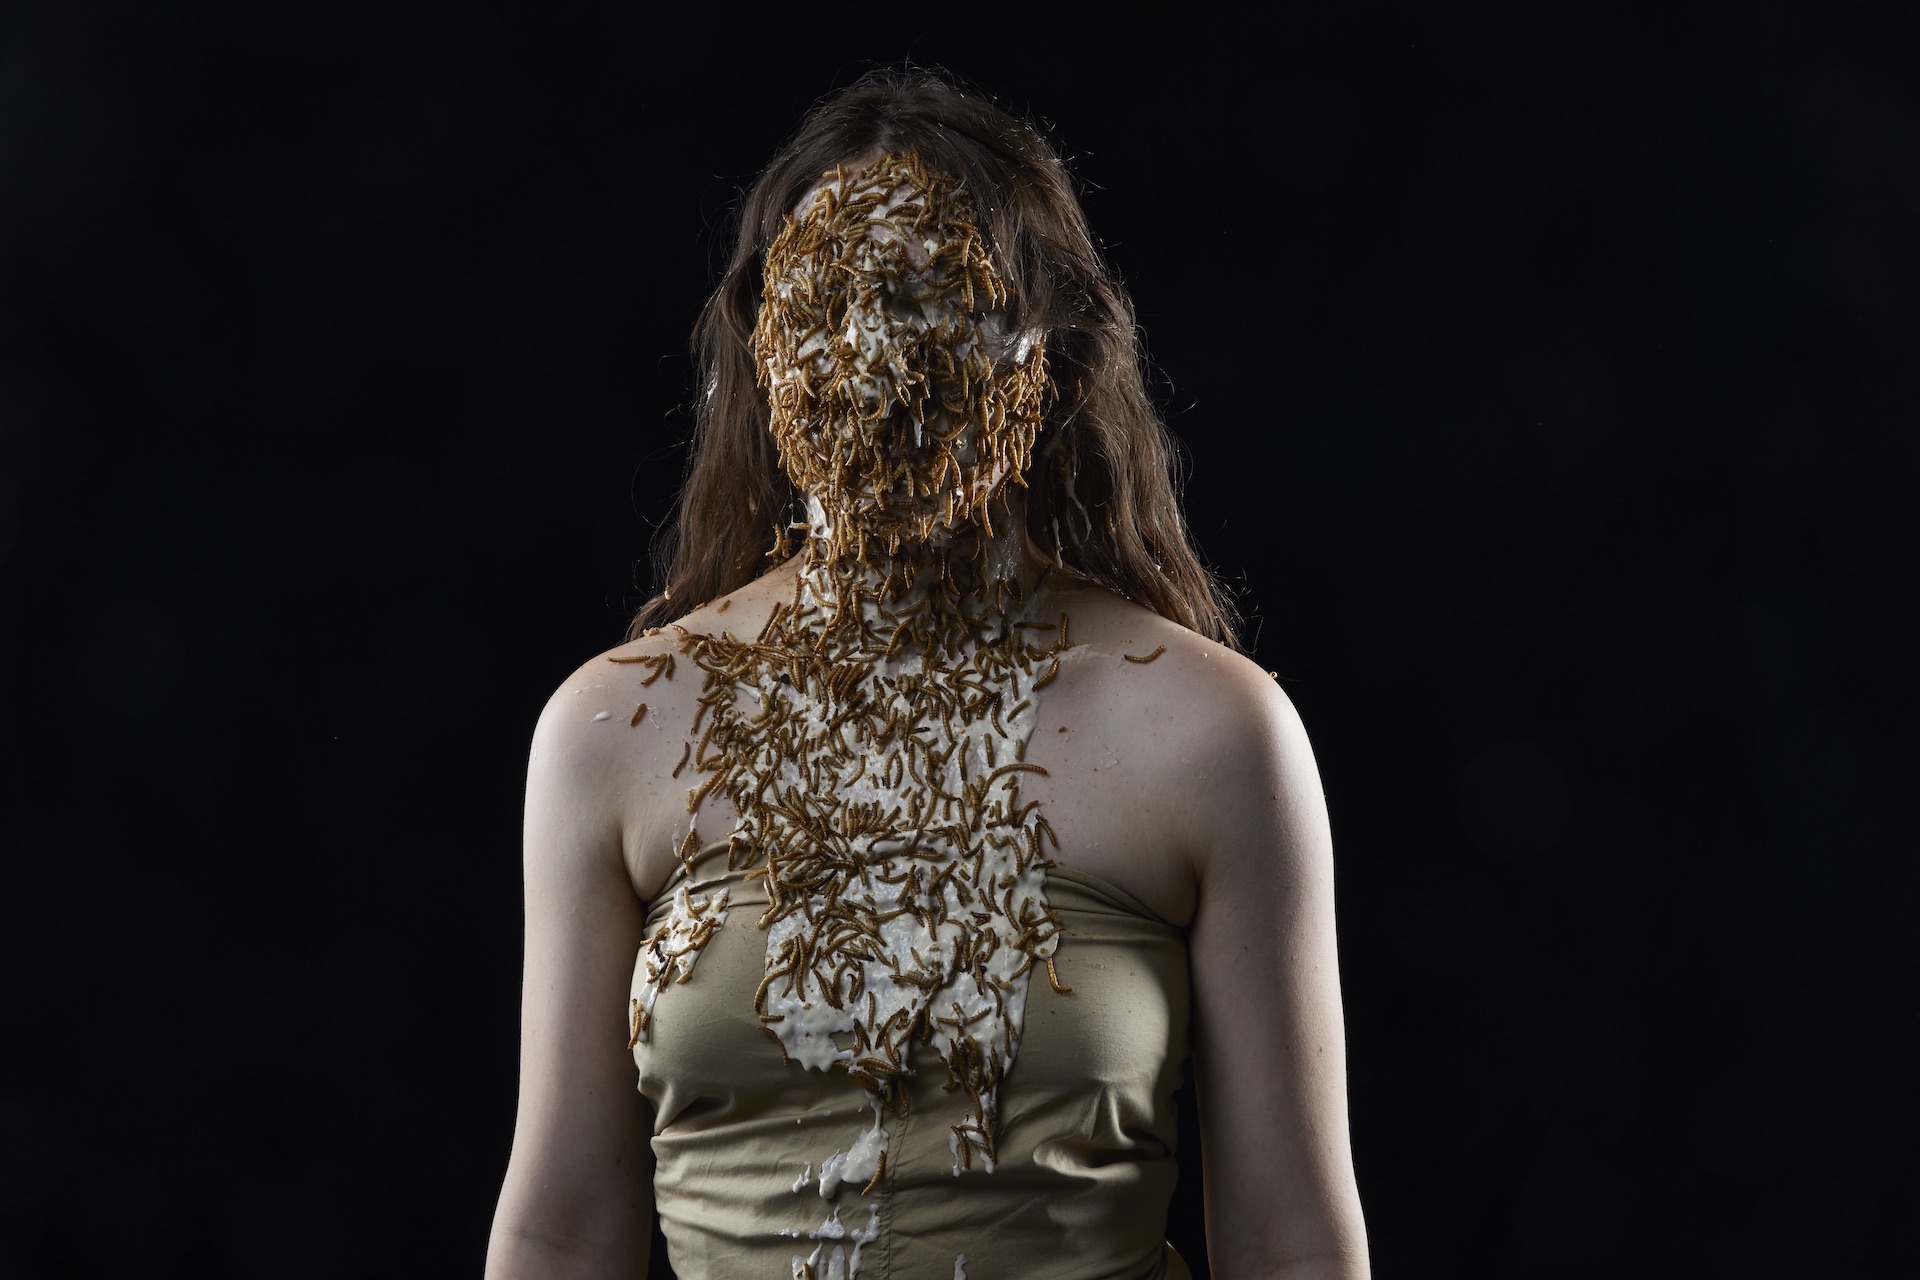 Eine junge Frau mit langem, braun gewelltem Haar und goldenem Bustier vor schwarzem Grund. Ihr gesamtes Gesicht und Teile des Dekolleté ist mit Maden bedeckt.